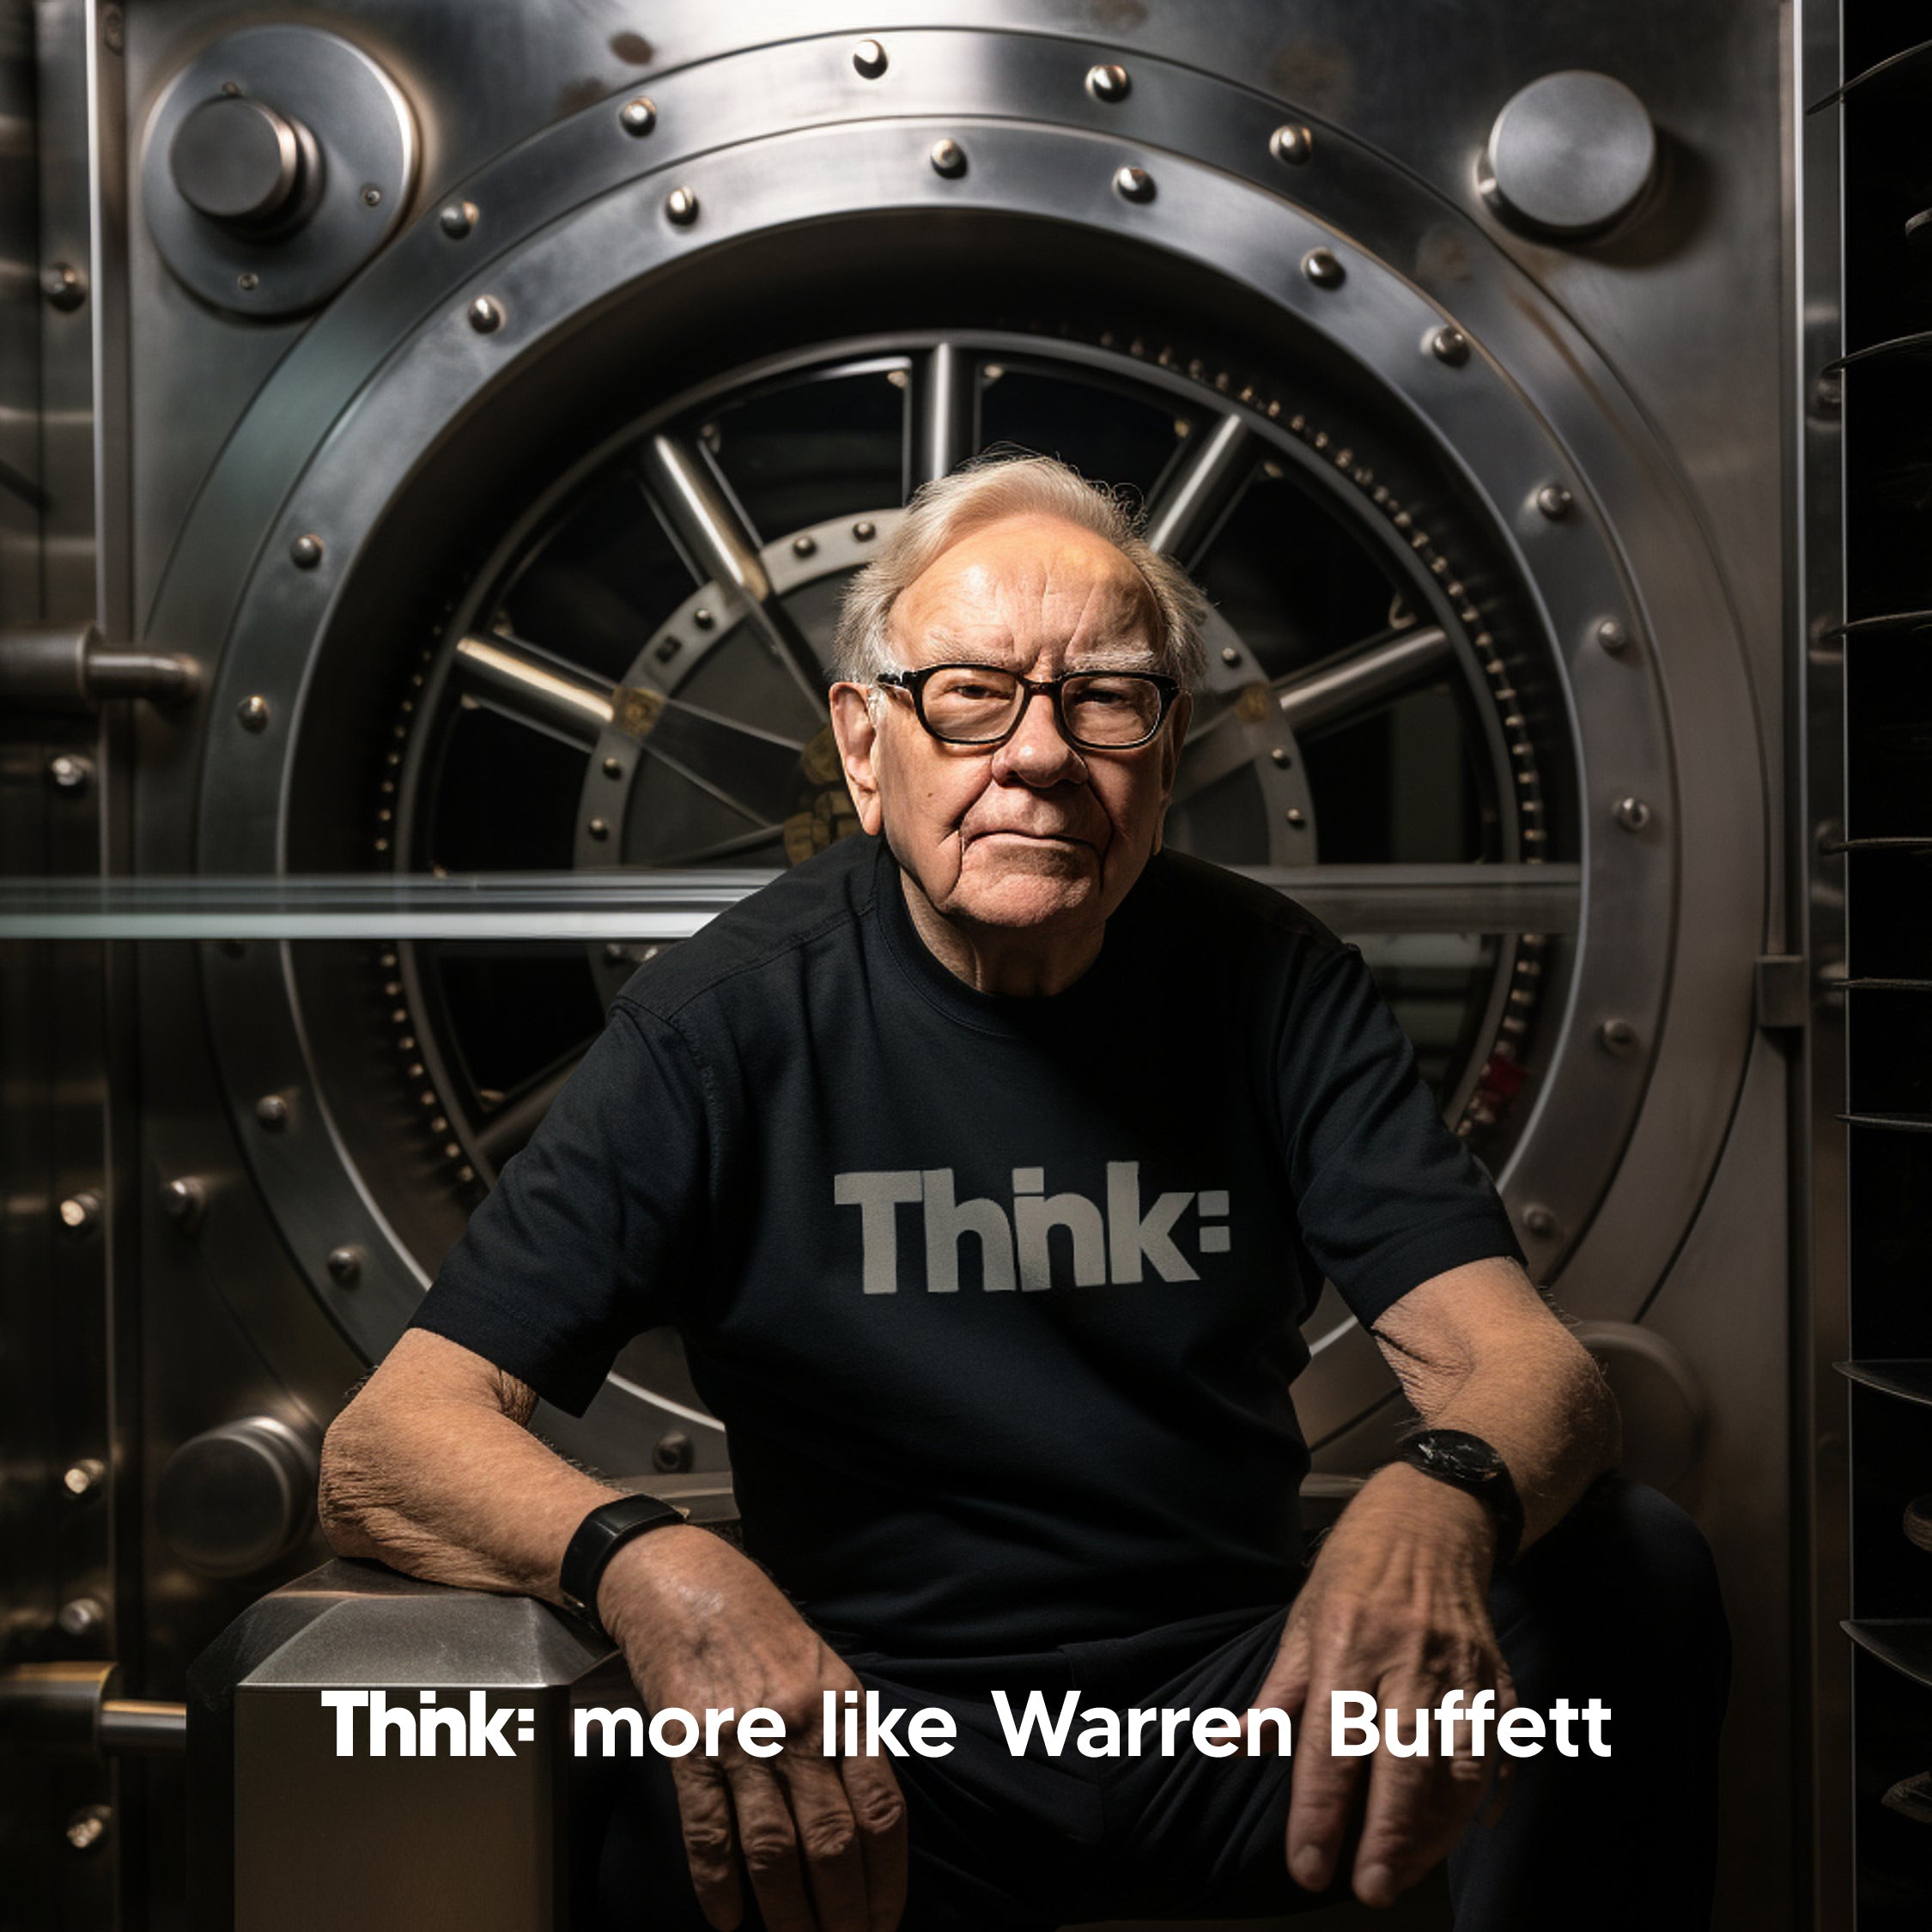 Thnk: More like Warren Buffett